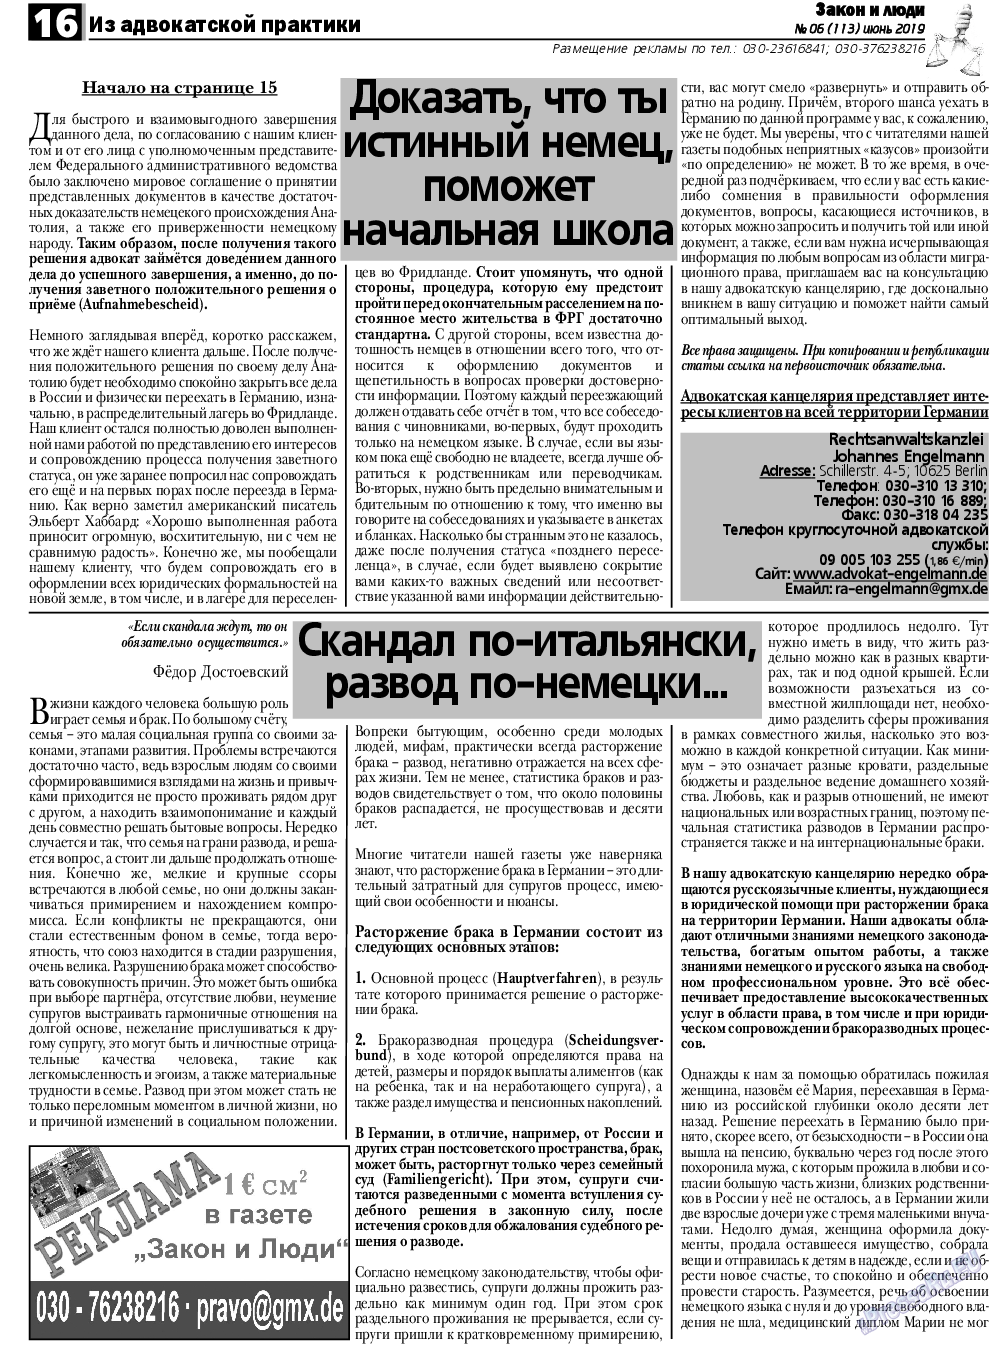 Закон и люди, газета. 2019 №6 стр.16